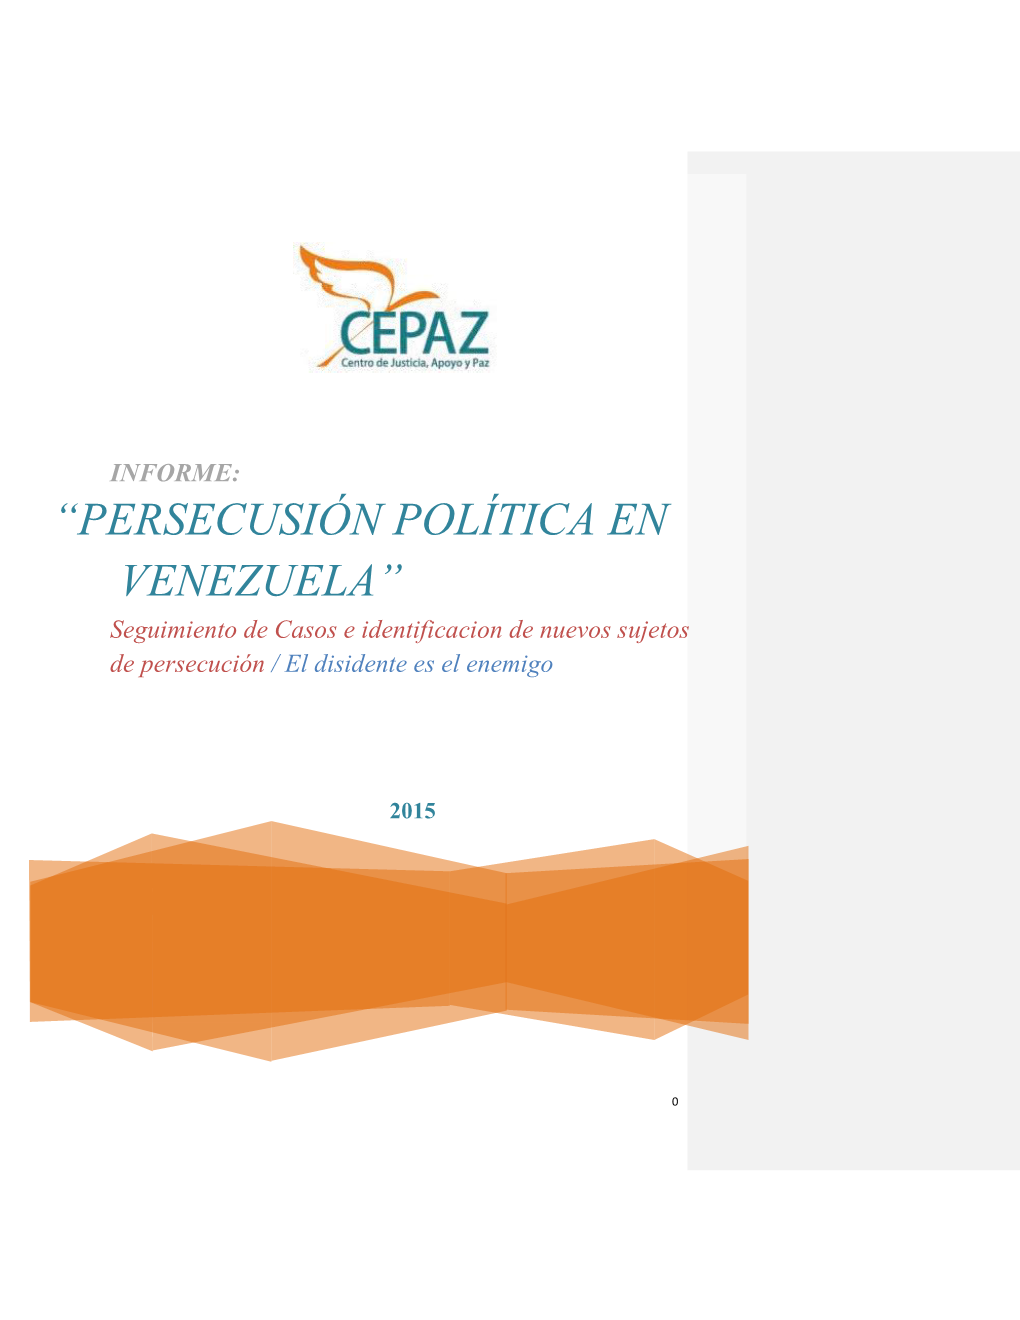 “PERSECUSIÓN POLÍTICA EN VENEZUELA” Seguimiento De Casos E Identificacion De Nuevos Sujetos De Persecución / El Disidente Es El Enemigo